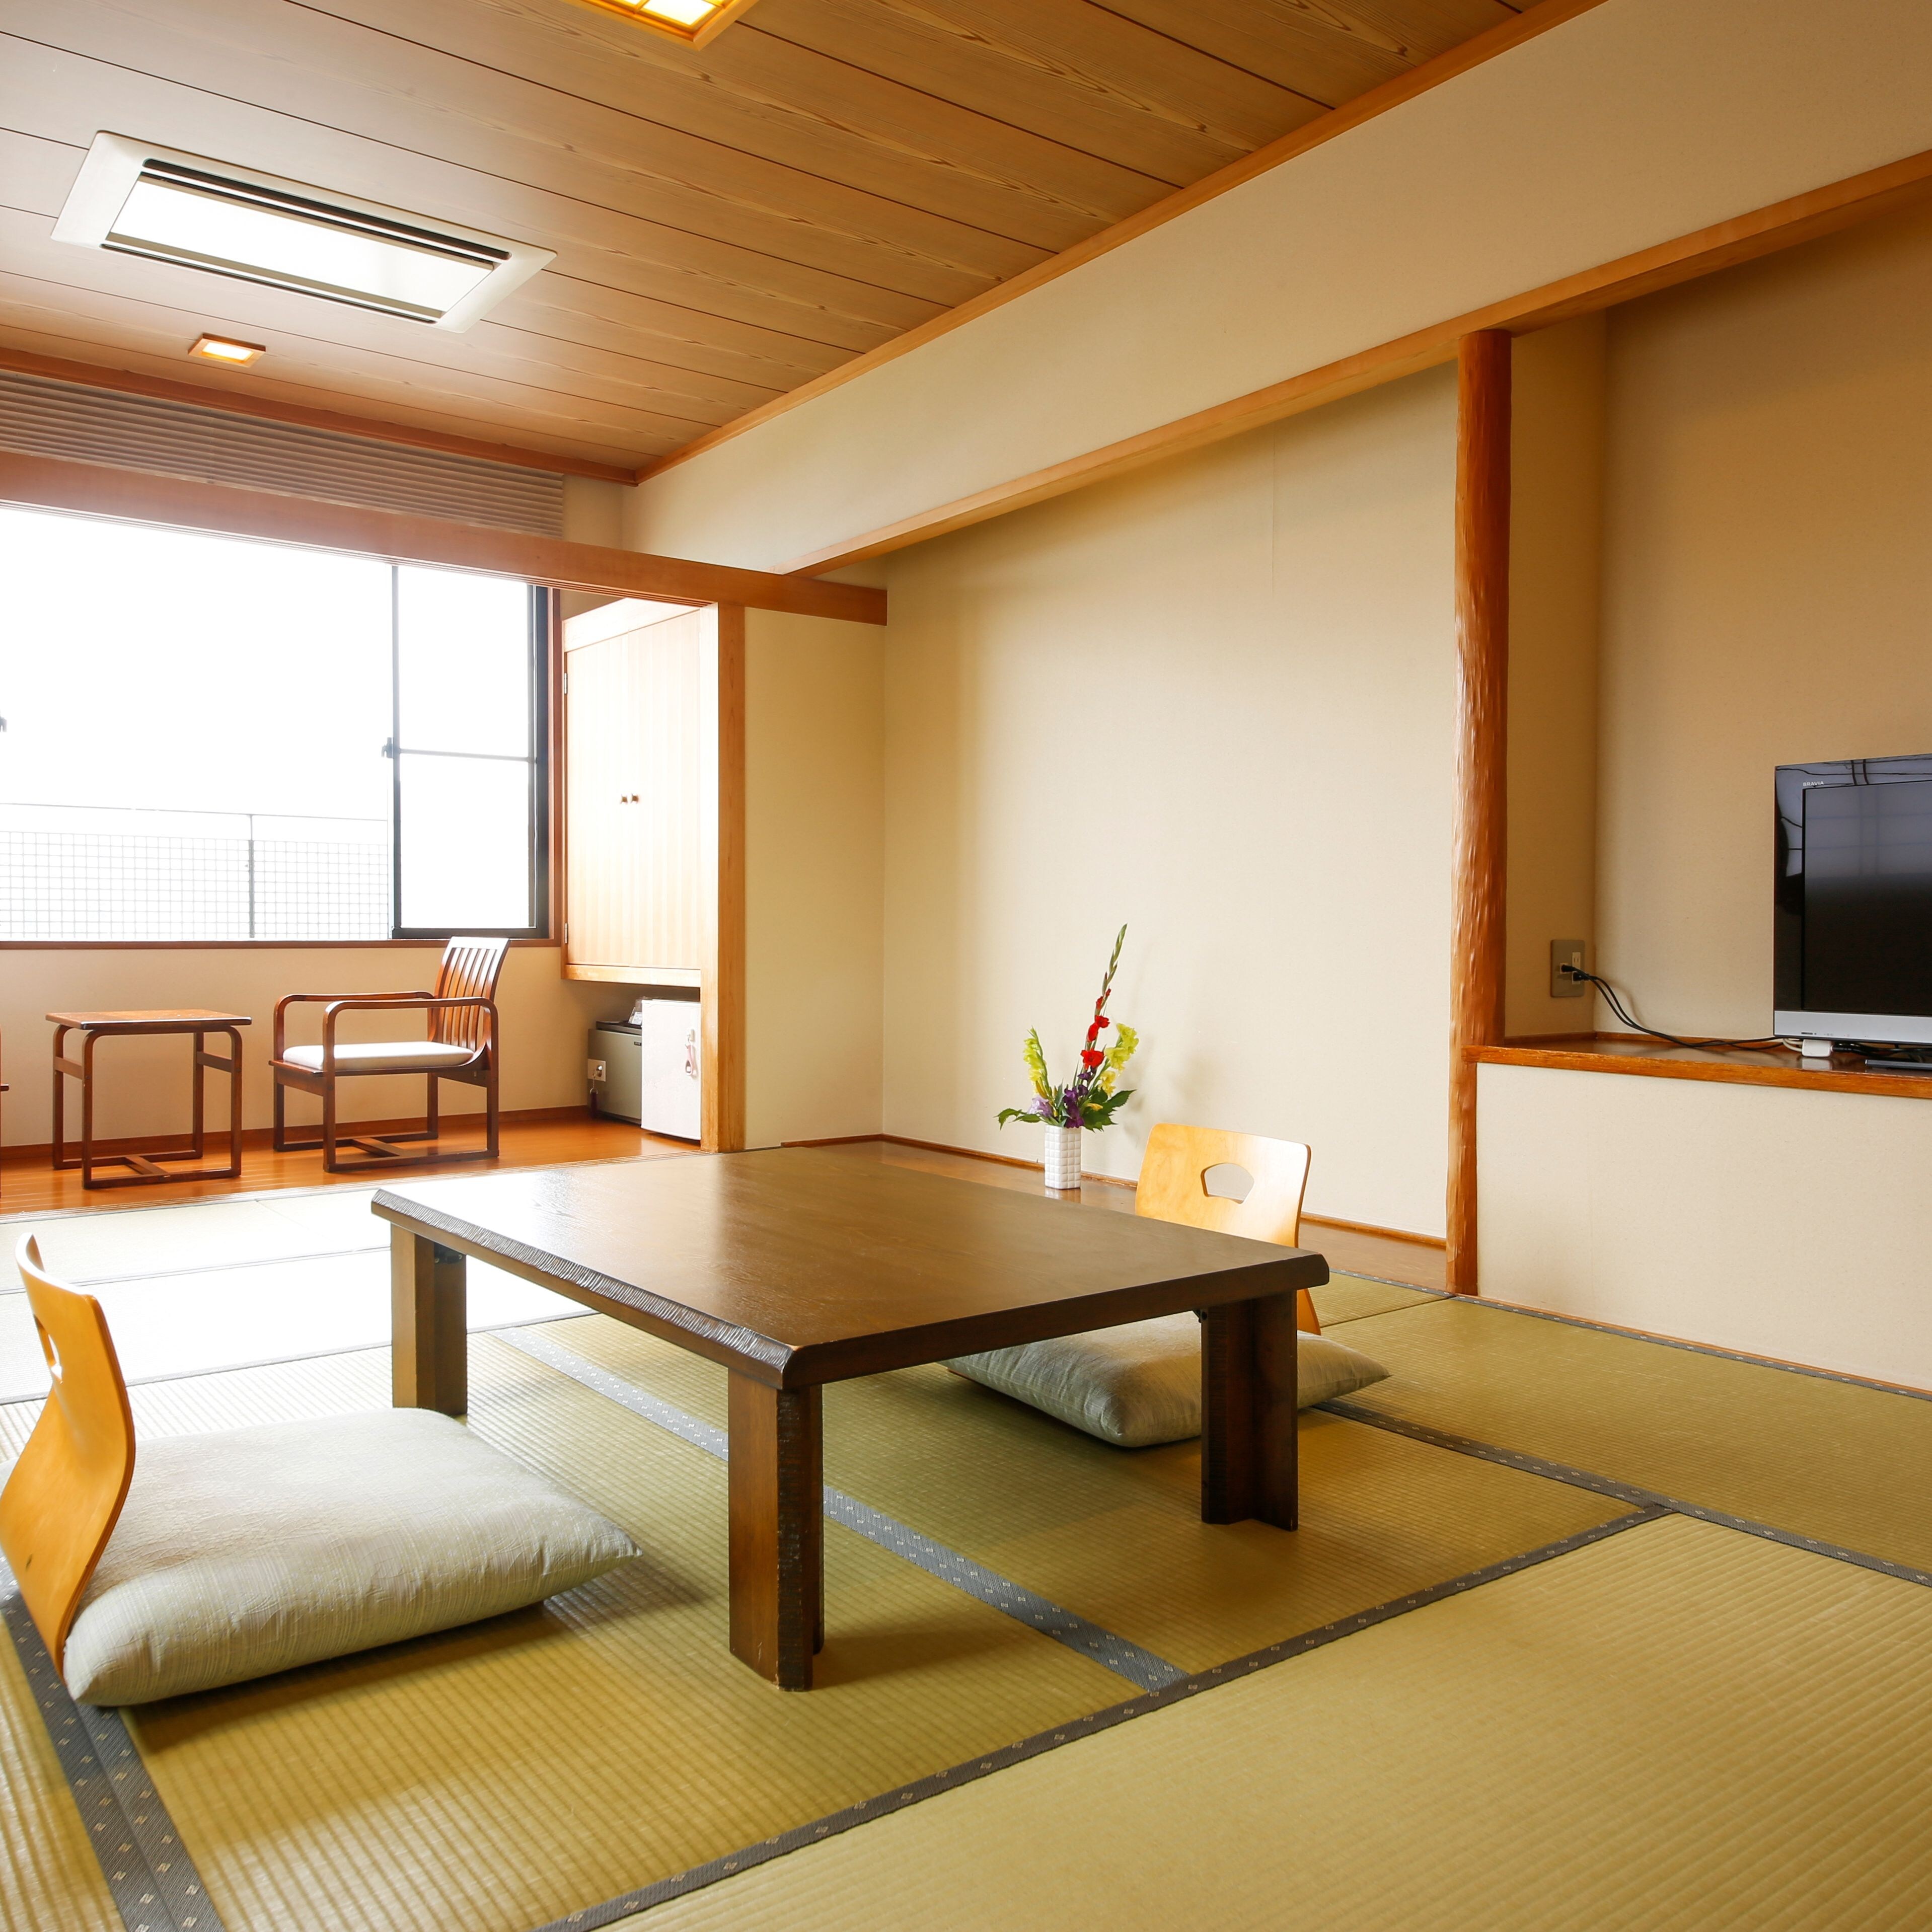 청결감이 있는 조용한 일본식 방에서, 평소의 소음을 잊고, 여유롭게 편히 쉬실 수 있습니다♪